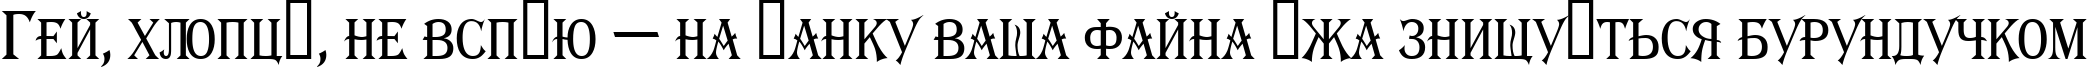 Пример написания шрифтом a_AlgeriusCapsNr текста на украинском